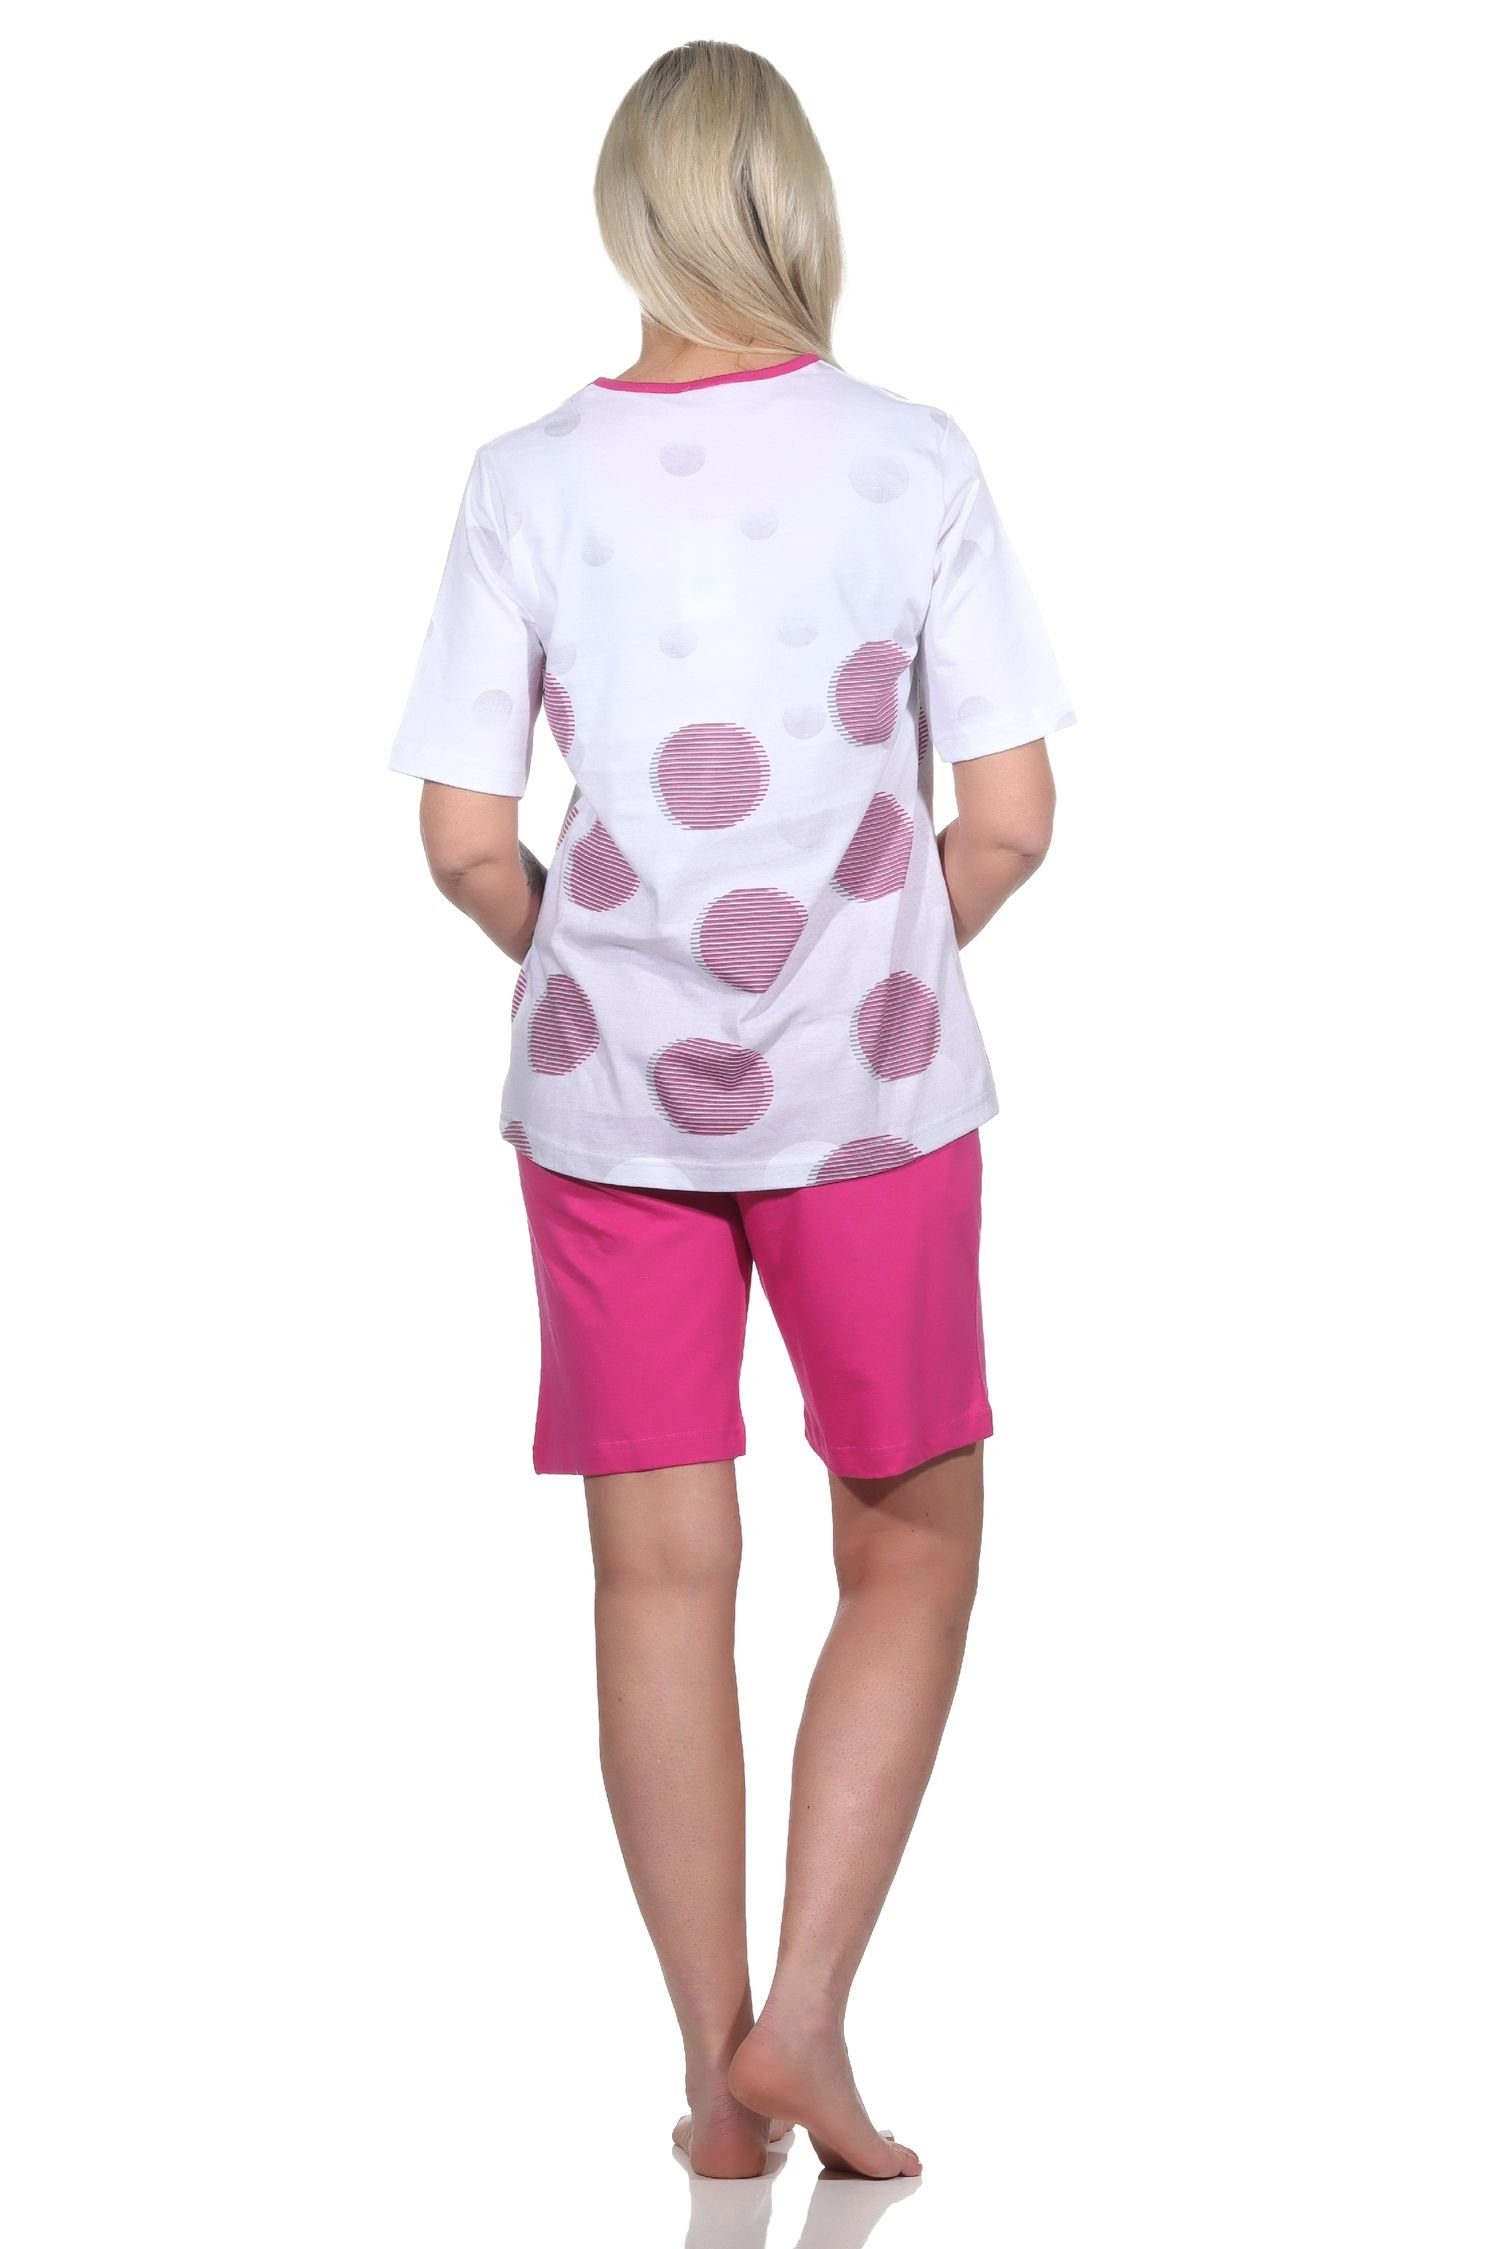 Shorty in Punkte Übergrößen - Optik pink auch Damen Normann kurzarm Pyjama Schlafanzug in